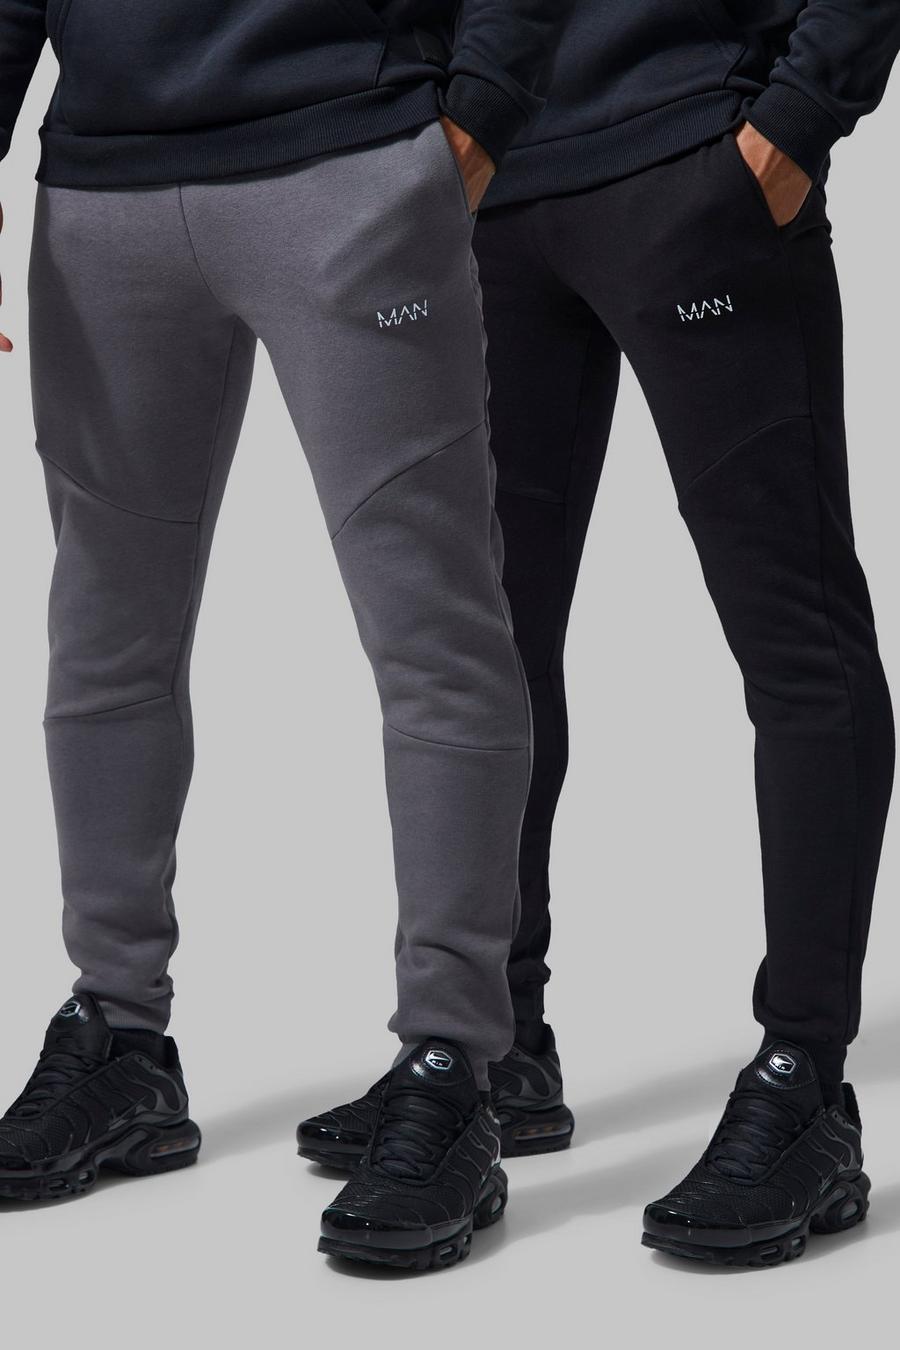 Pack de 2 pares de pantalones deportivos MAN Active para el gimnasio con bolsillos, Multi image number 1